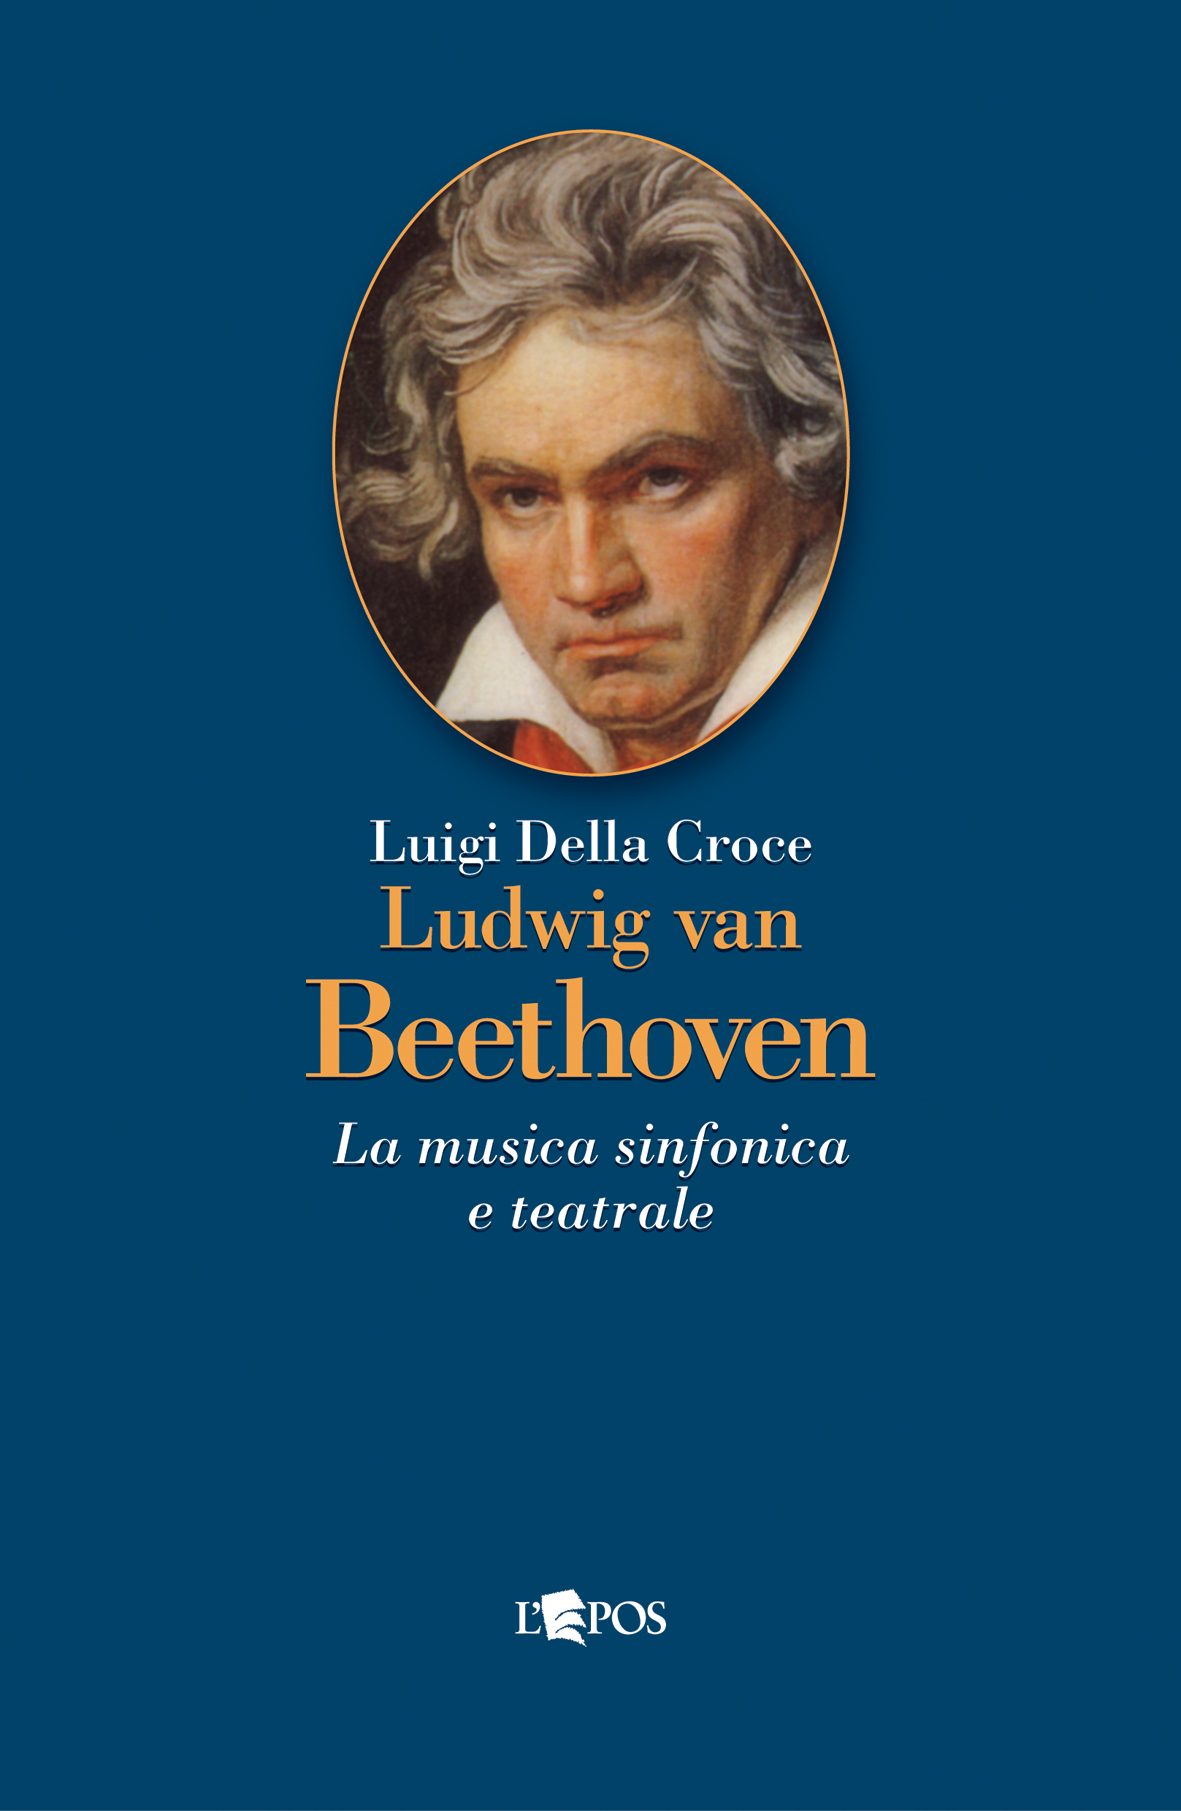 Beethoven 1, 2